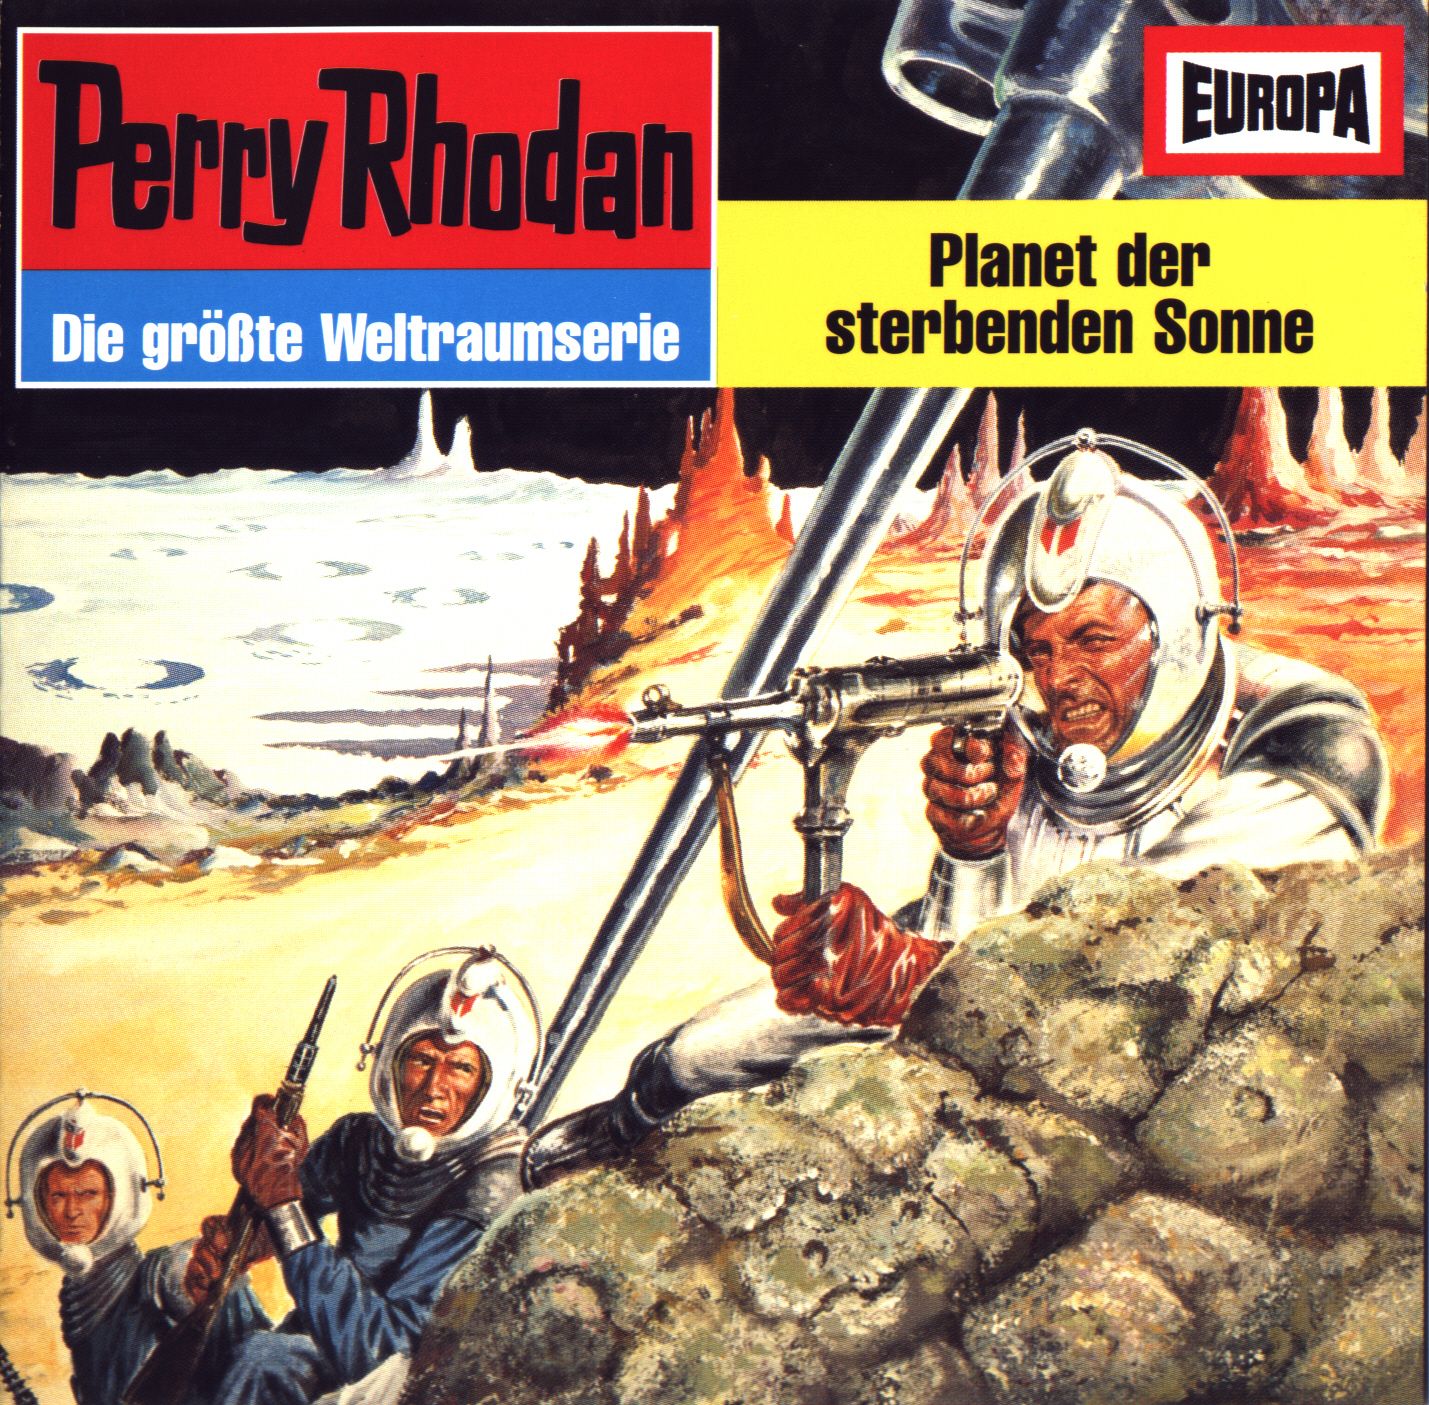 Perry Rhodan: Planet der sterbenden Sonne